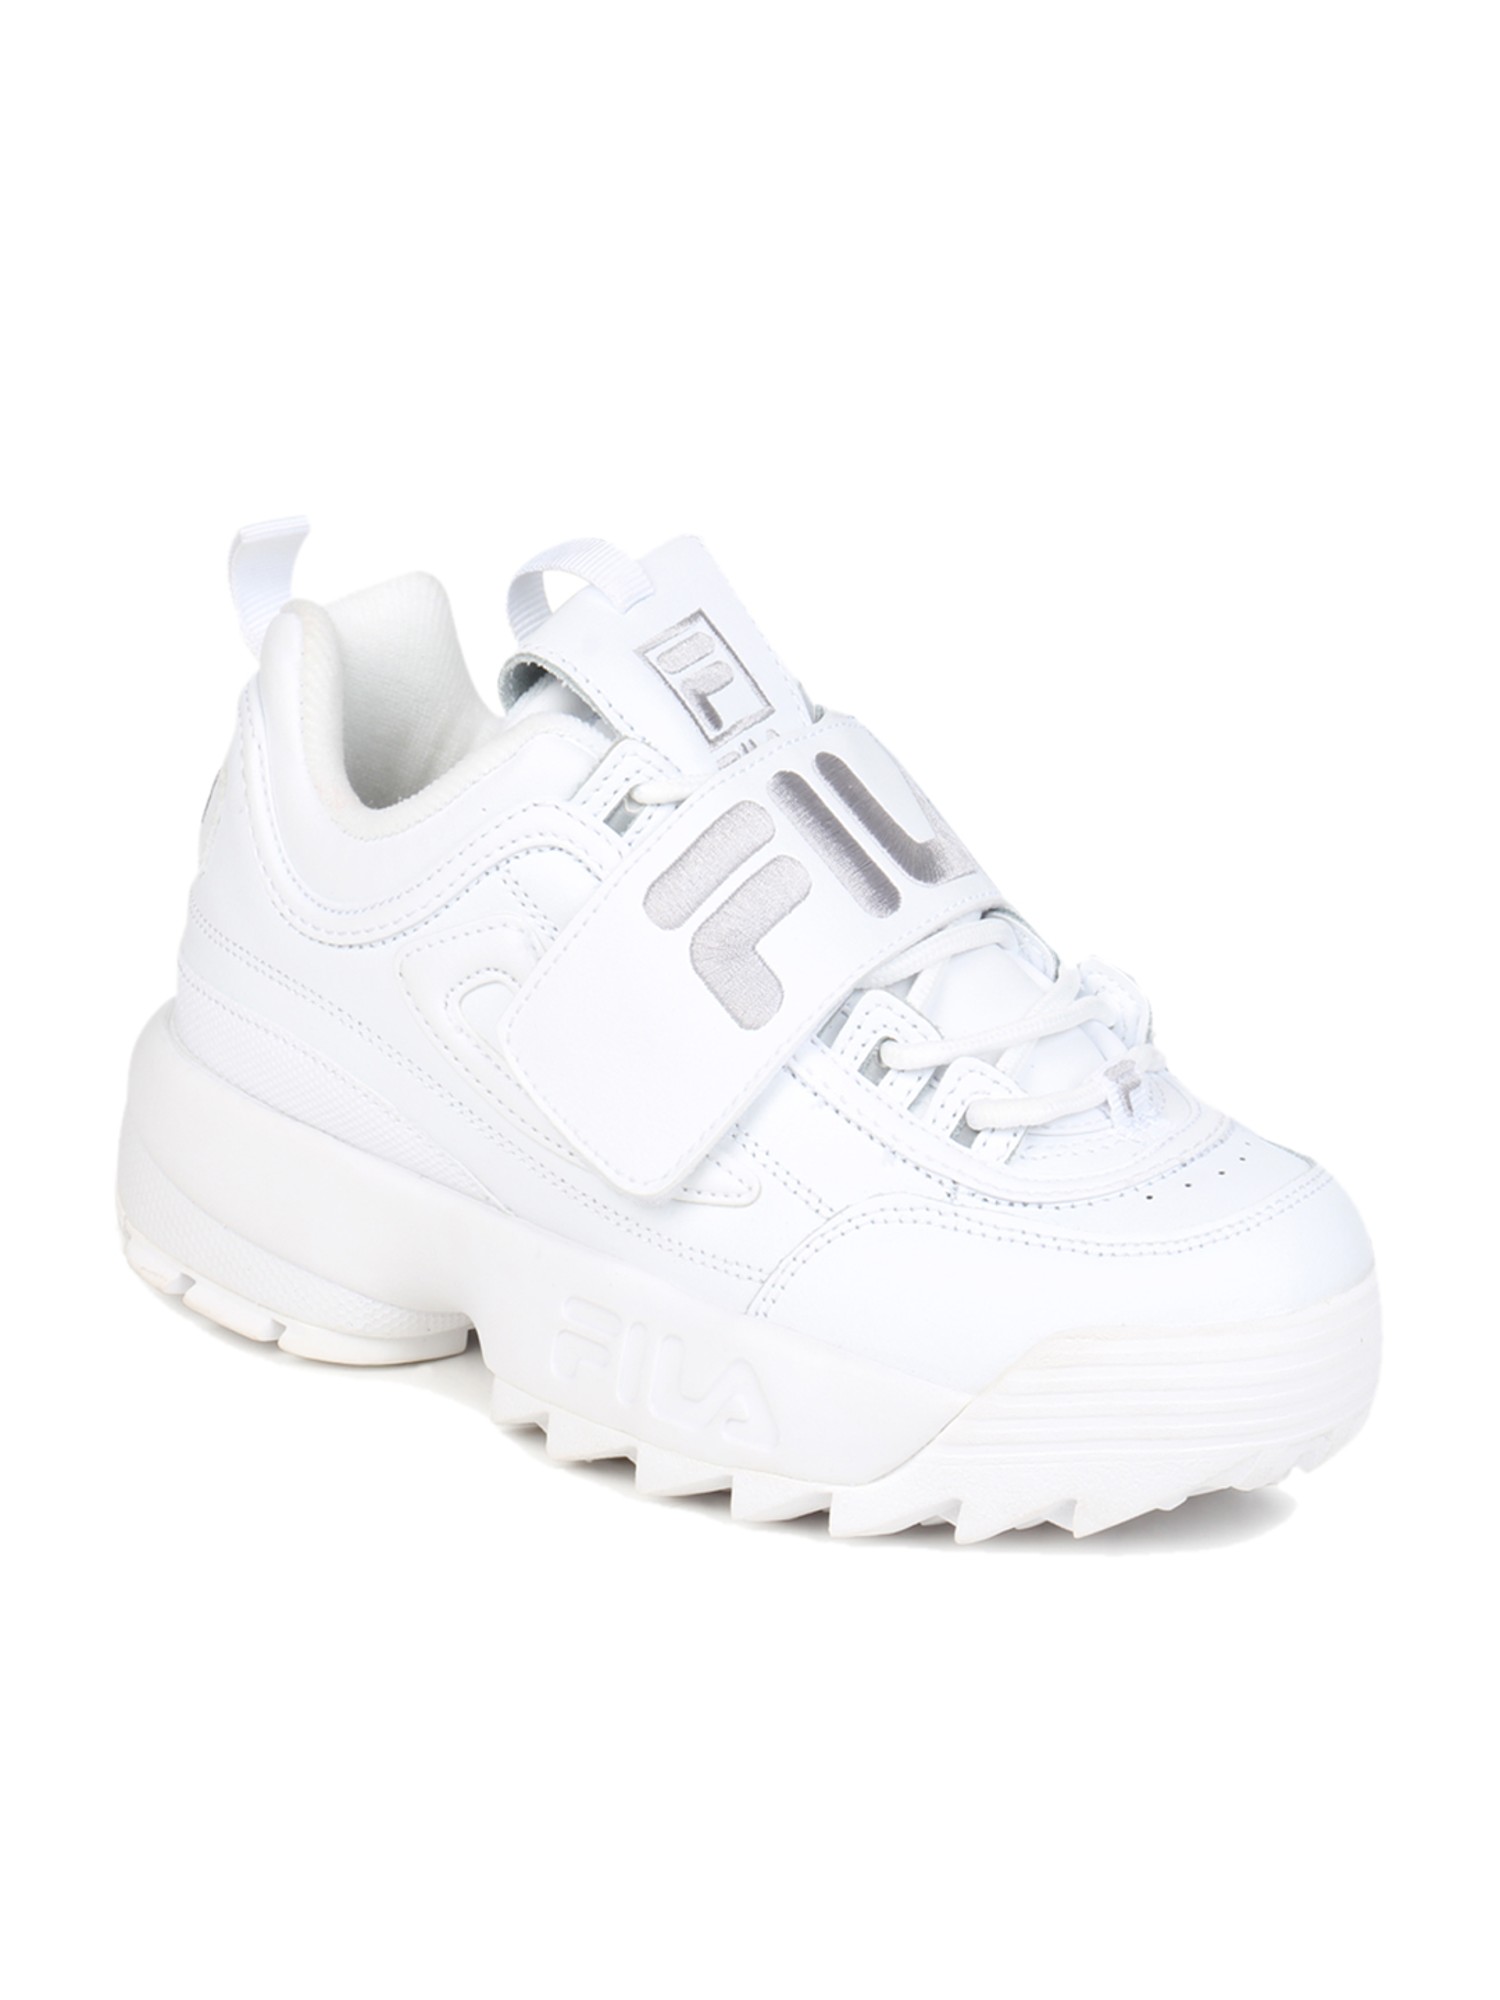 Buy Fila Disruptor II White Sneakers 